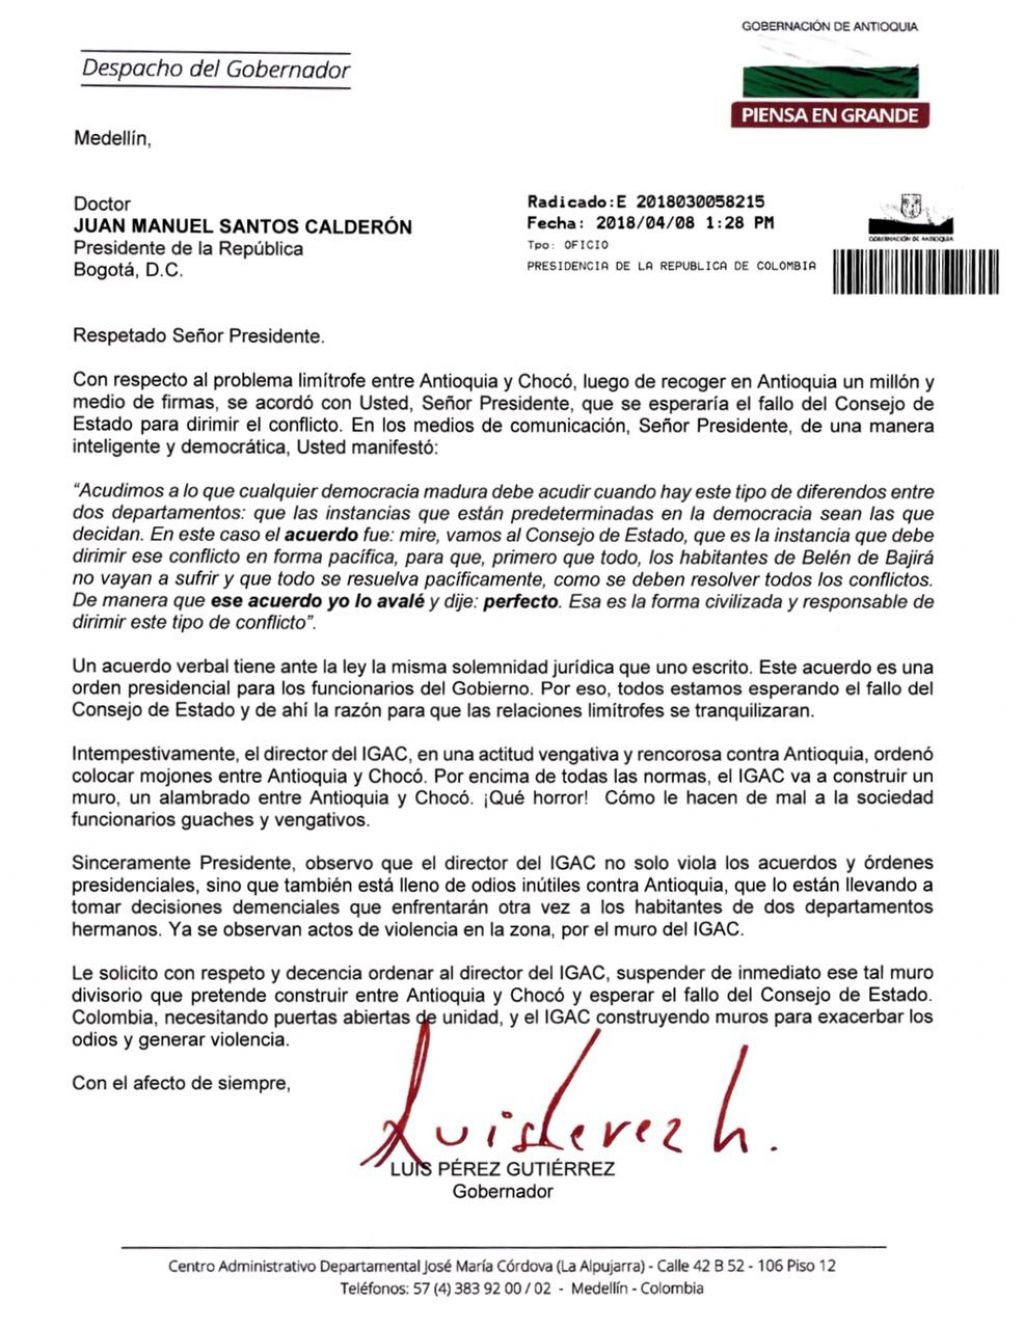 Carta del Gobernador de Antioquia Luis Pérez Gutierrez al Presidente de la República